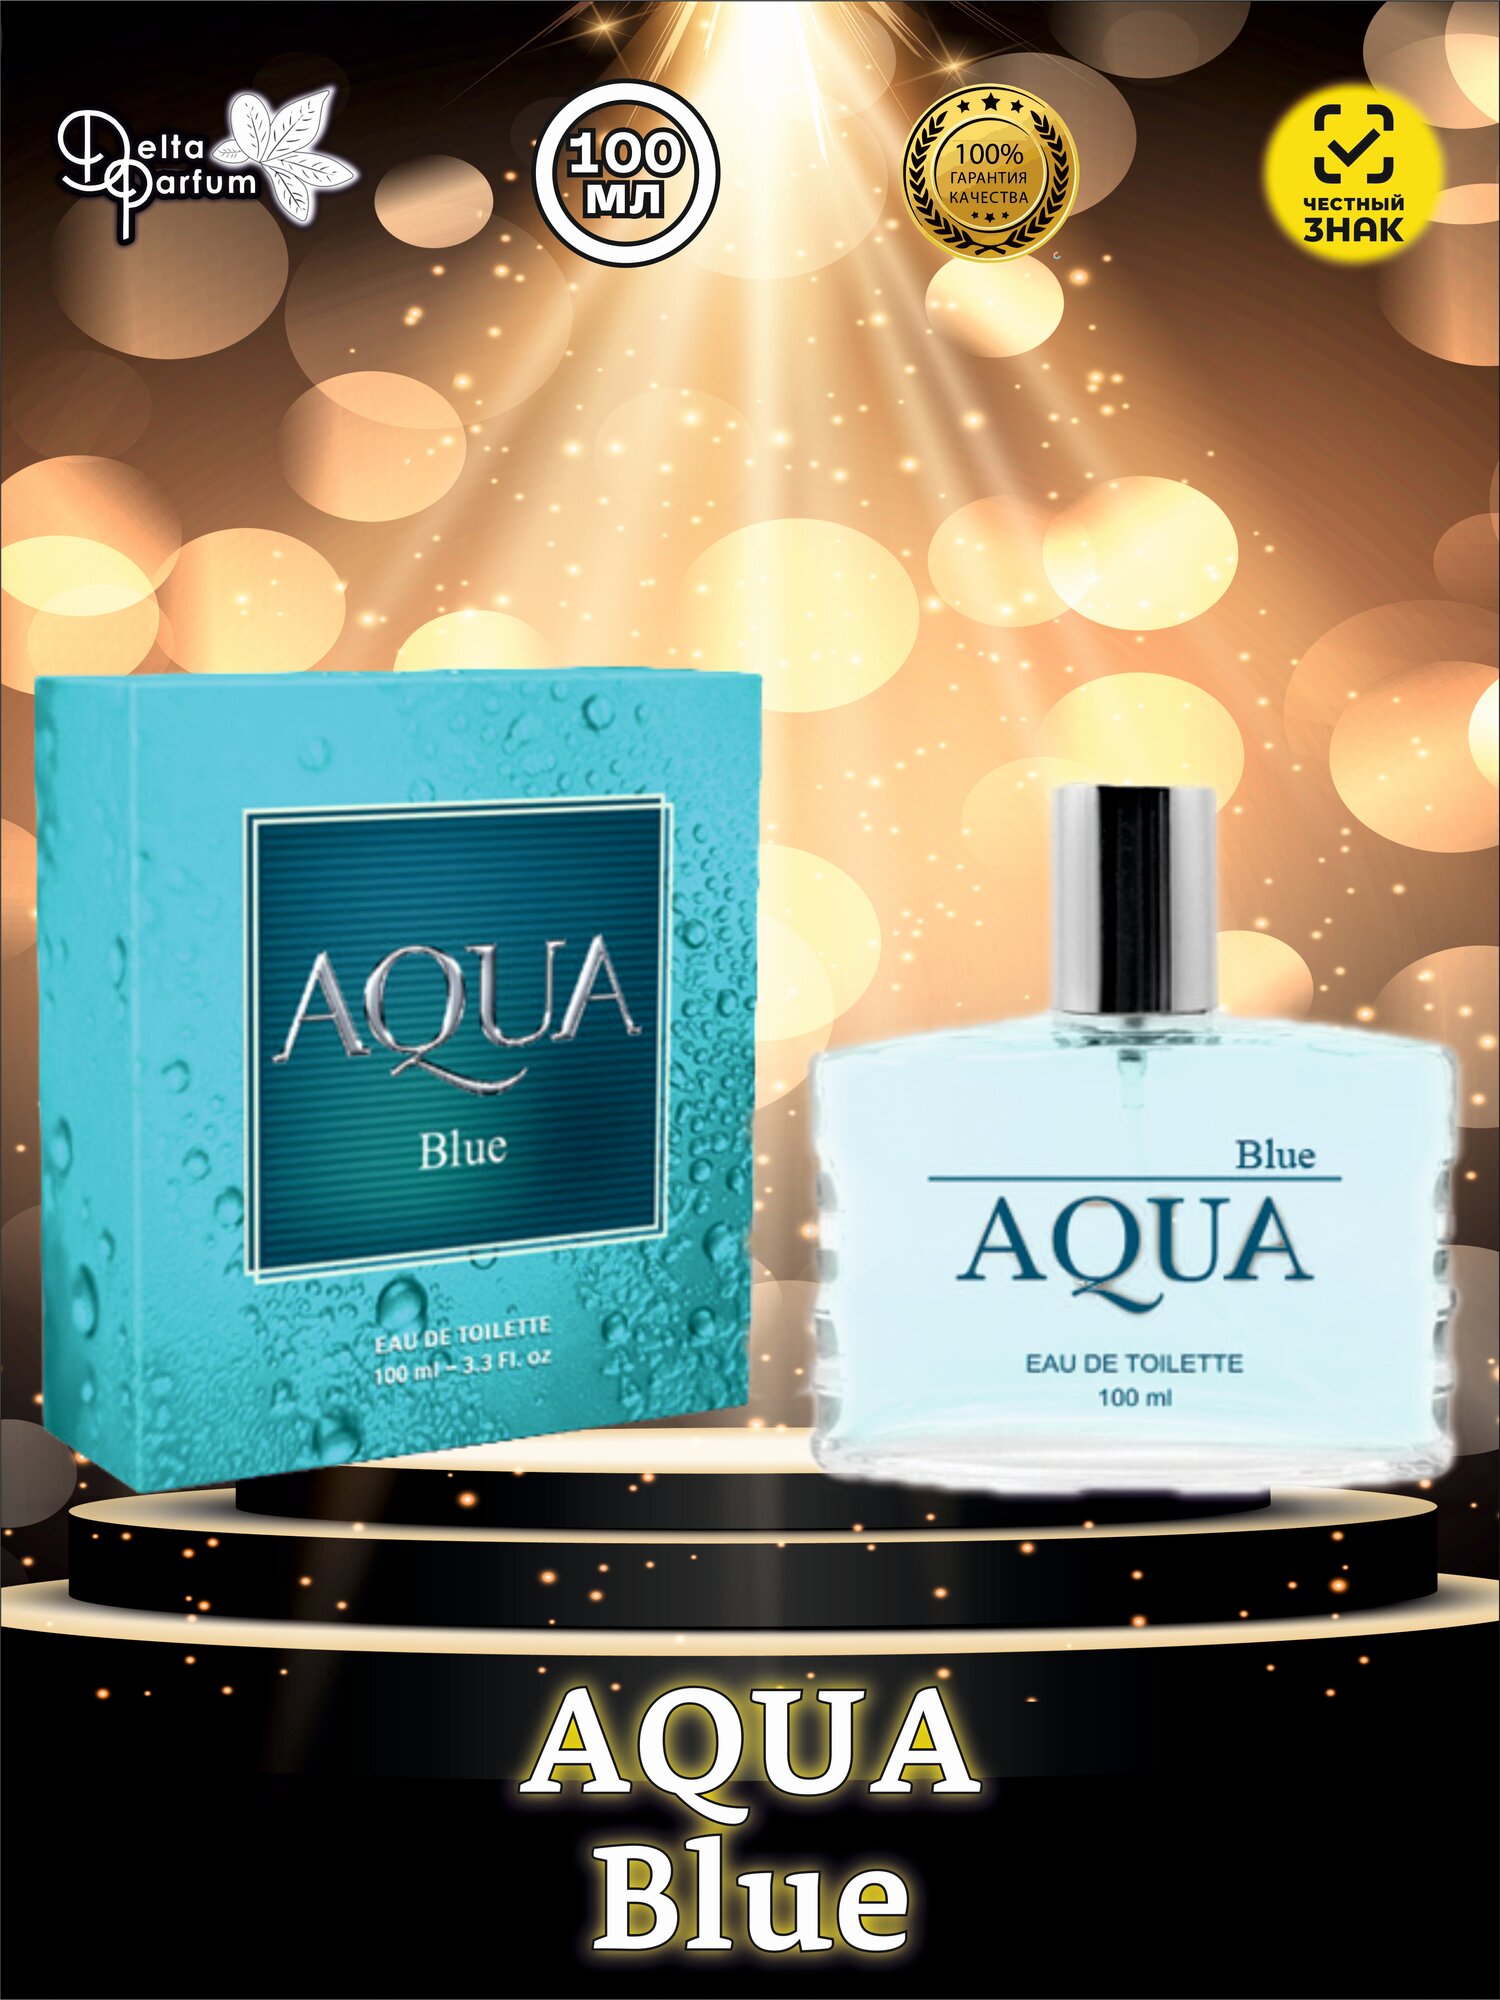 Delta parfum Туалетная вода мужская Aqua Blue